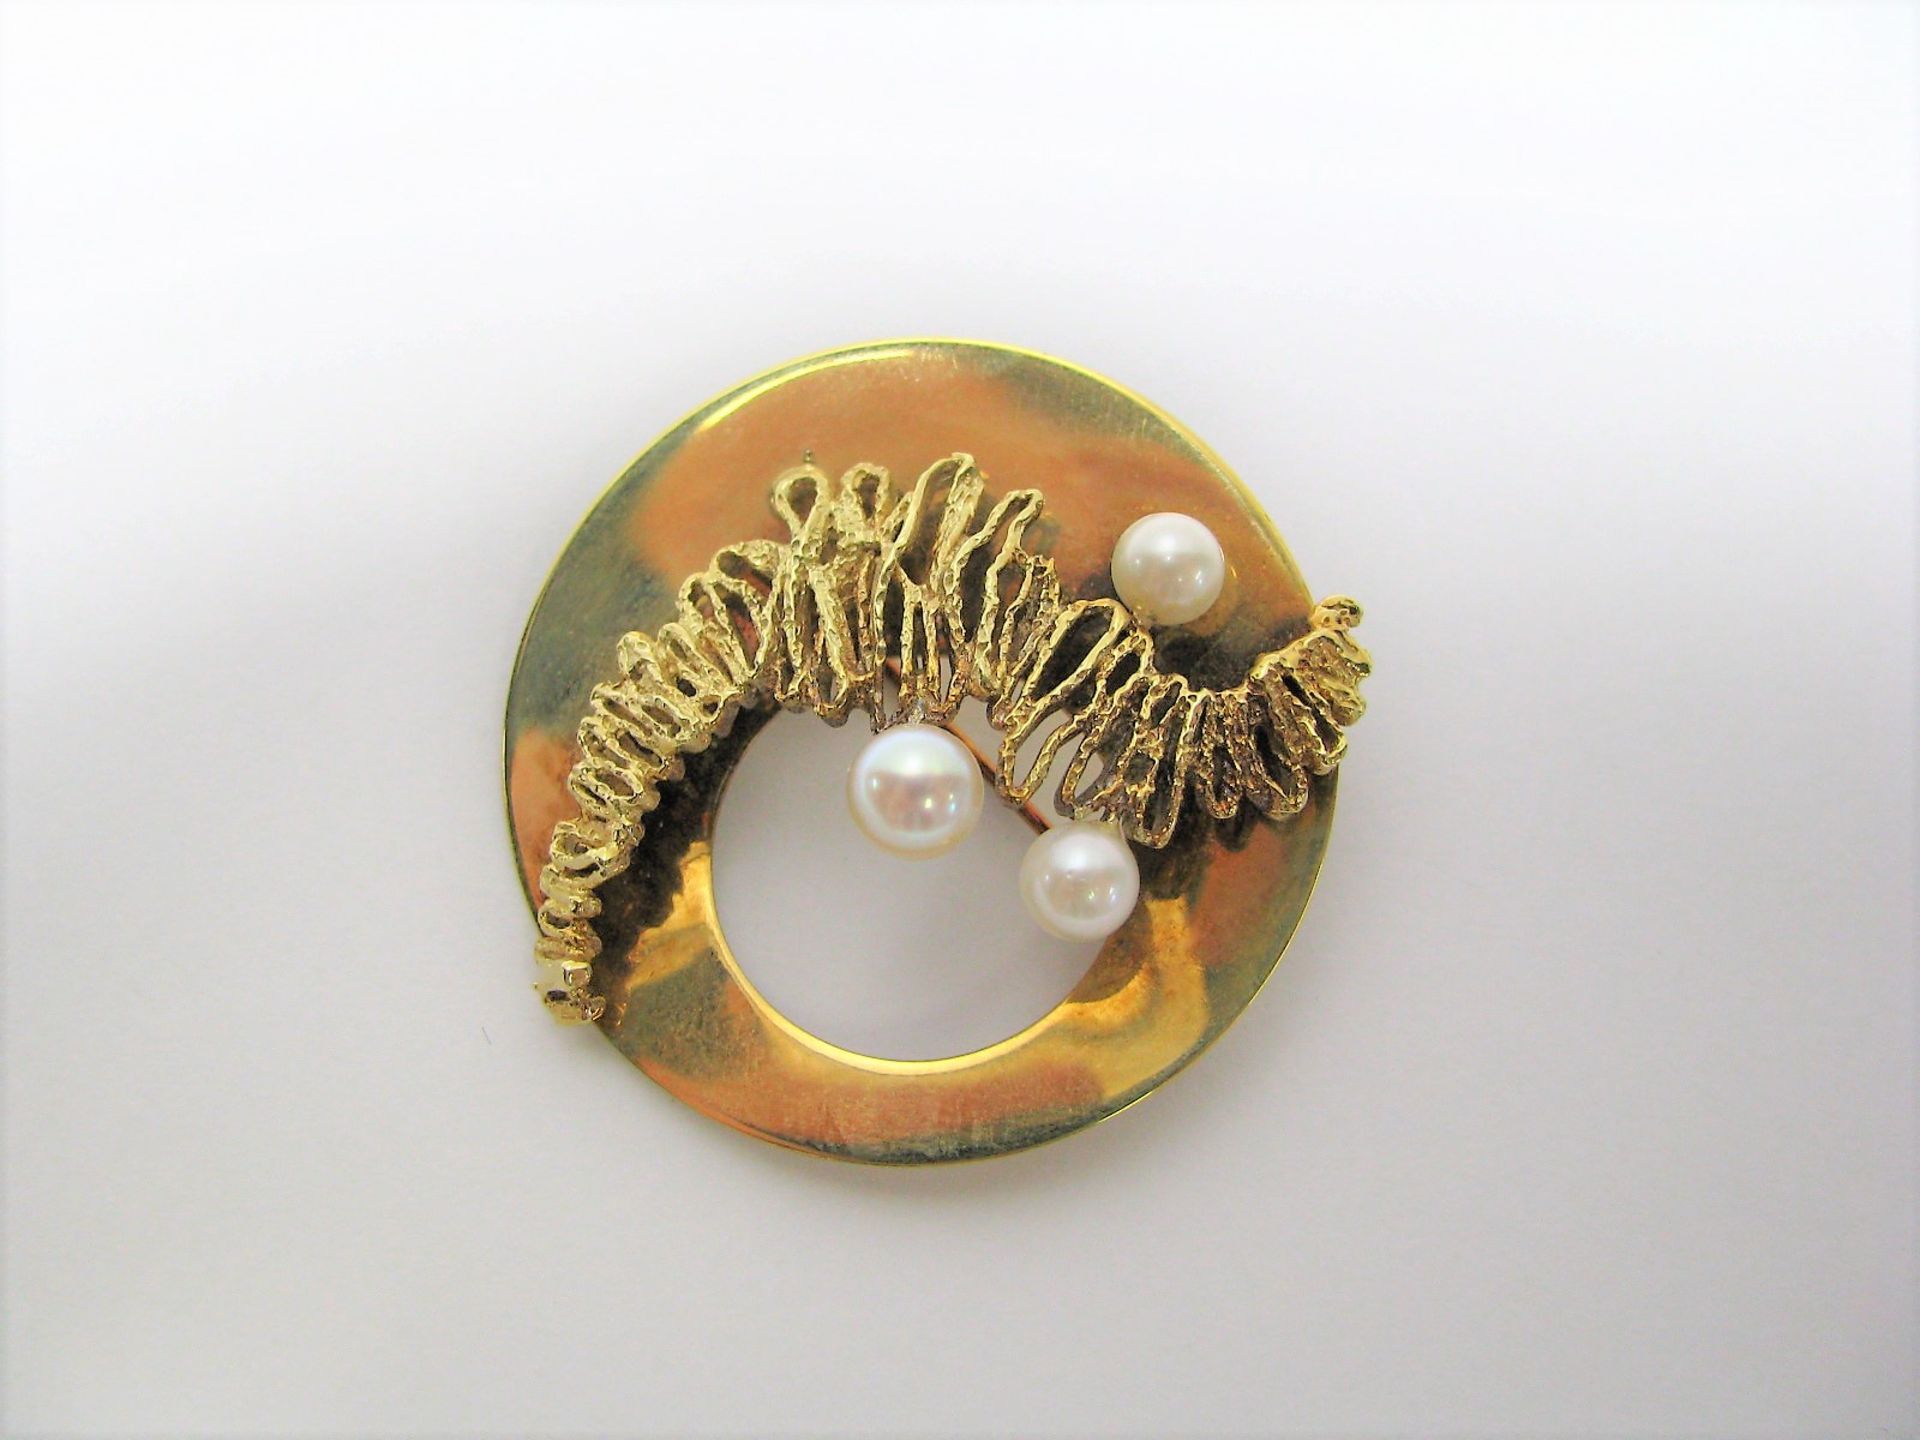 Designer-Brosche/-Anhänger mit 3 Perlen, 585er Gelbgold, gepunzt, 13,2 g, monogr. "SH", d 4,5 cm,